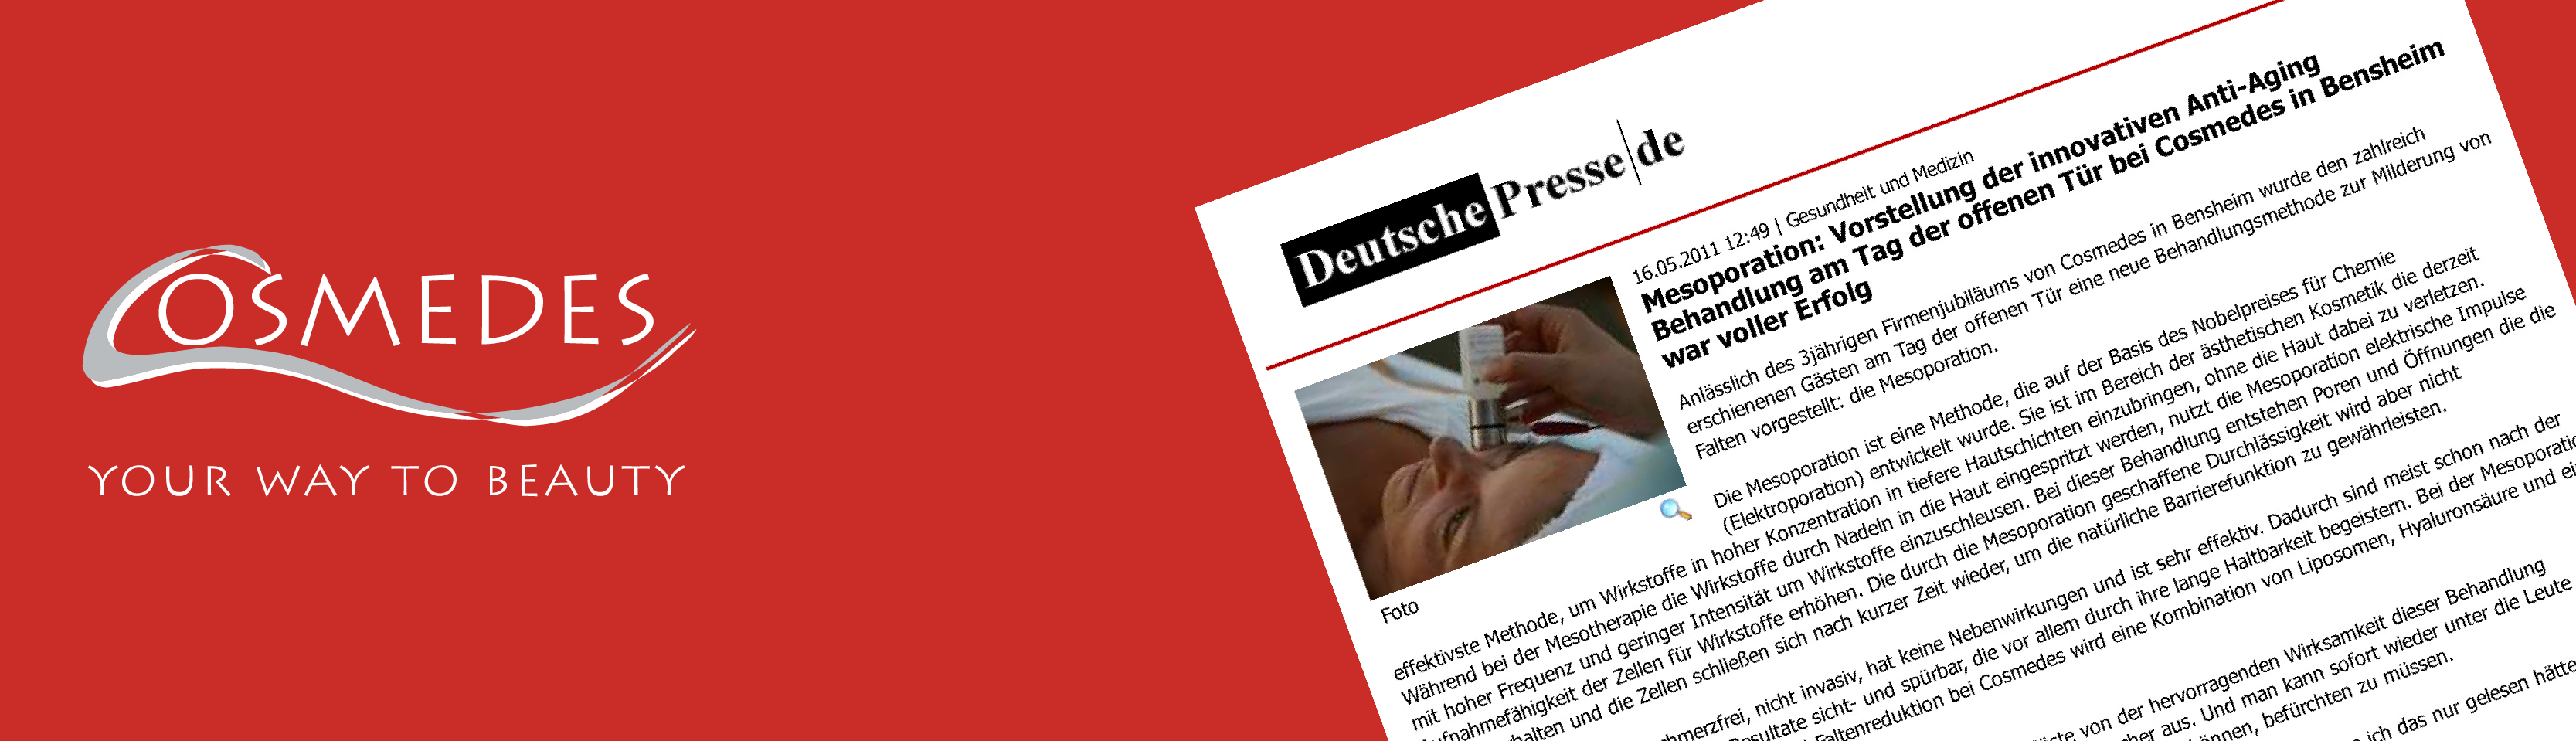 Banner Presse Deutsche Presse "Mesoporation"